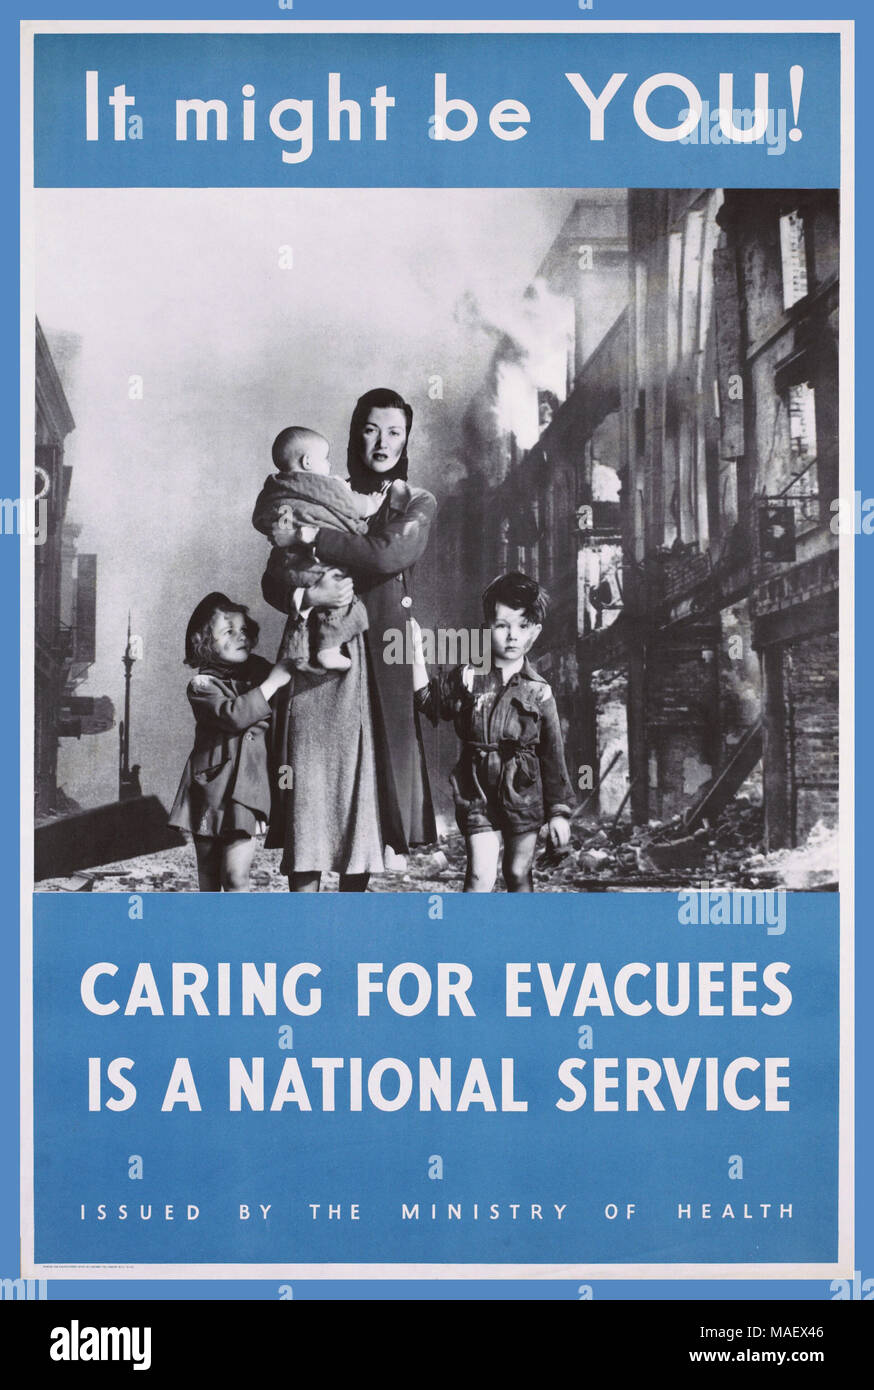 1940 Affiches de propagande de l'information UK photographie d'une femme tenant un bébé et accompagnée de deux petits enfants. Ils marchent dans une rue bombardée avec des bâtiments en feu. Leurs vêtements sales et déchirés suggère qu'ils ont été capturés dans un raid aérien." Il serait peut-être vous ! Prendre soin des personnes évacuées EST UN SERVICE NATIONAL" DÉLIVRÉE PAR LE MINISTÈRE DE LA SANTÉ 1940 Seconde Guerre mondiale WW2 Propaganda Poster de l'information - Partie d'une série exhortant à prendre au sérieux les Britanniques d'évacuation et d'envoyer leurs enfants hors de la ville pour la sécurité. Banque D'Images